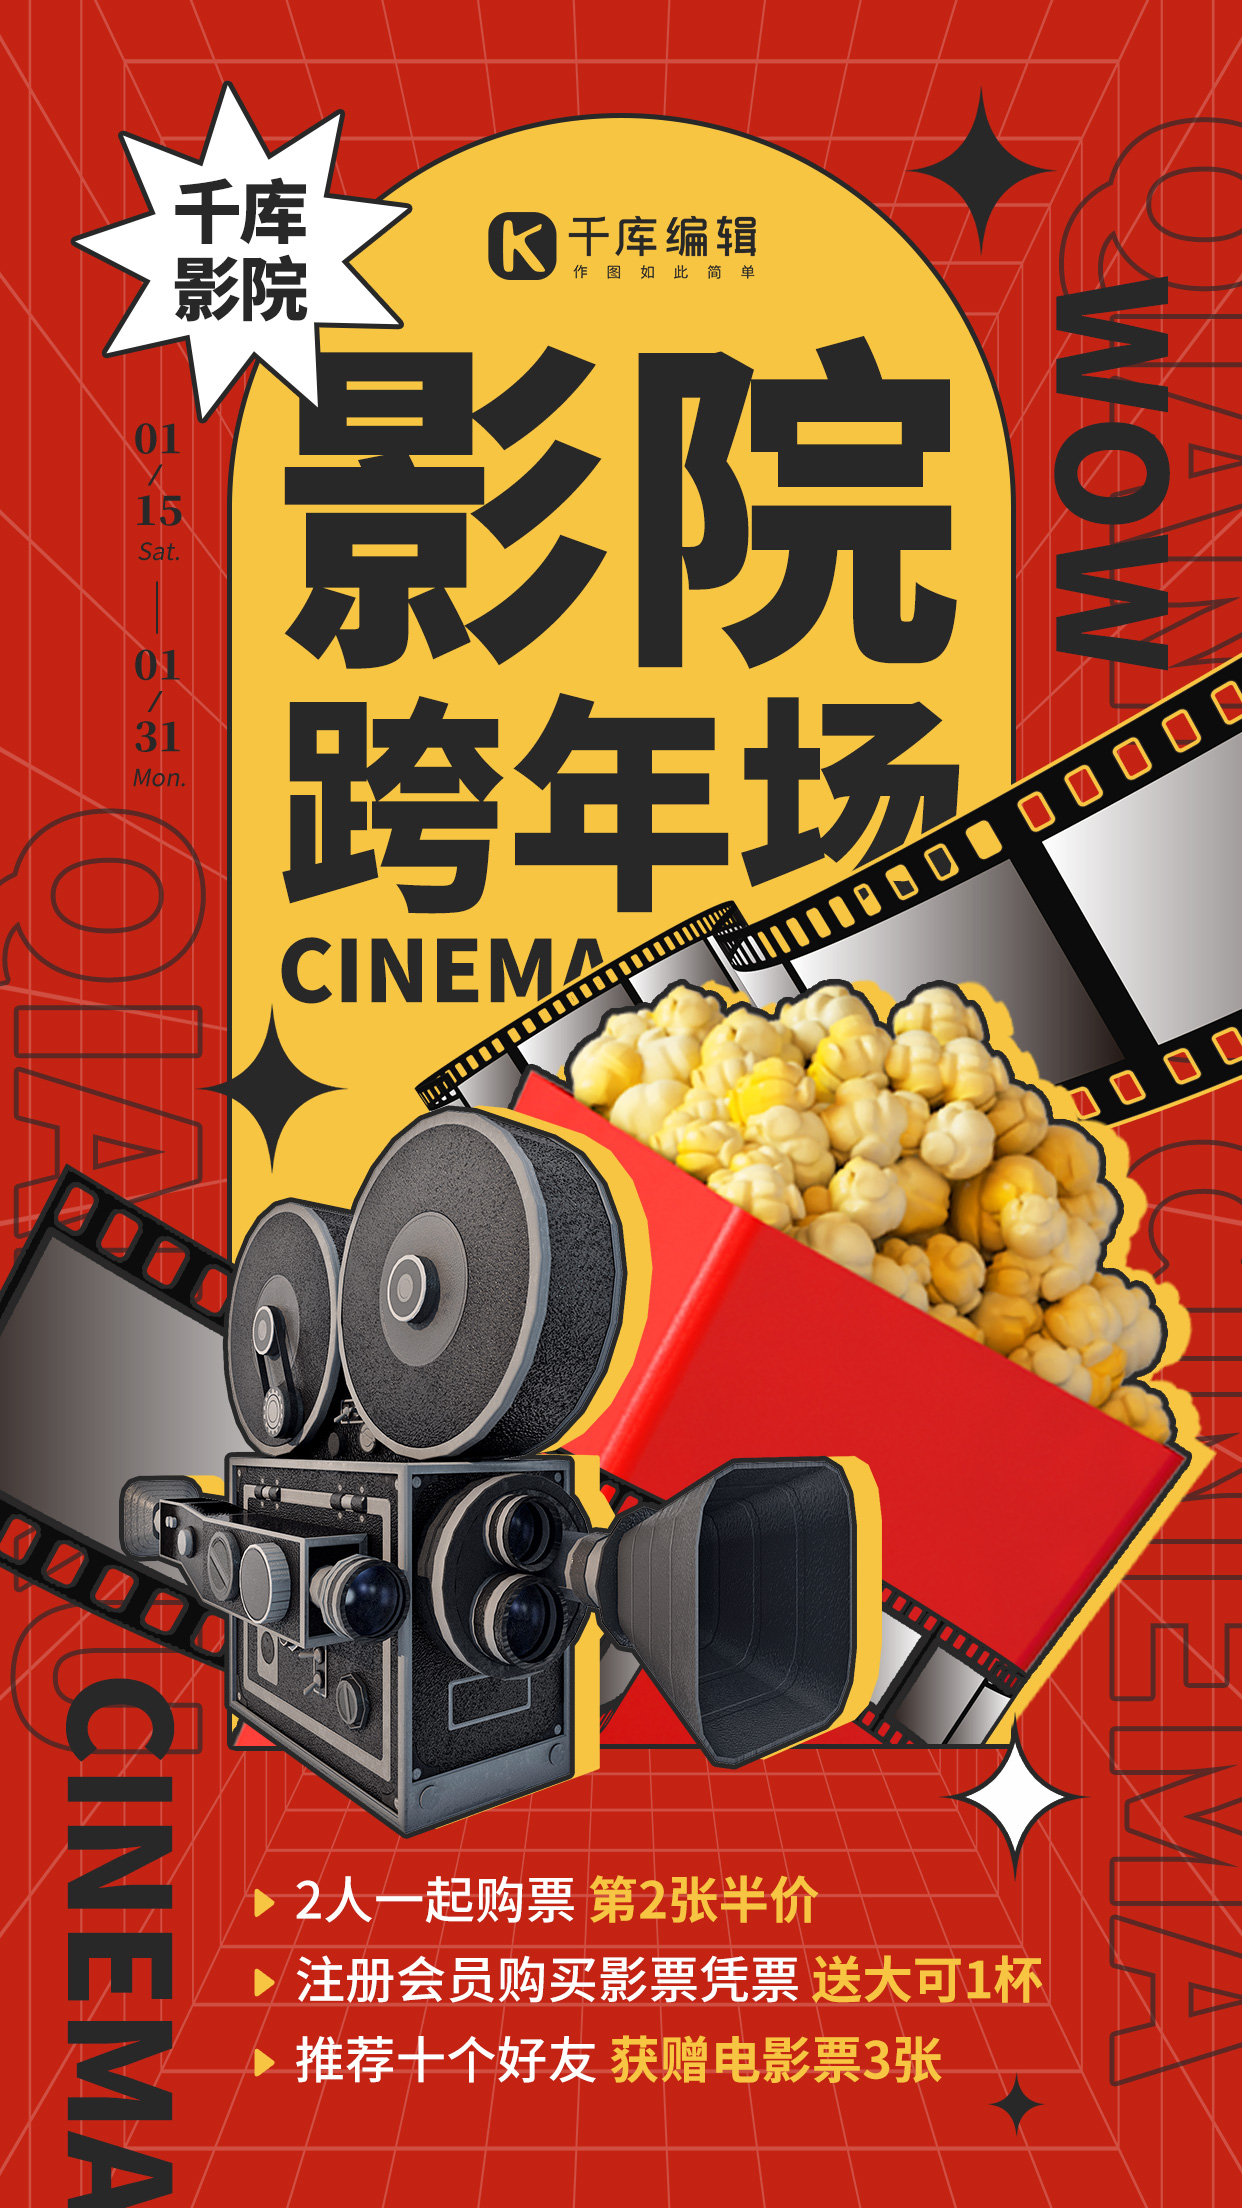 跨年娱乐电影影院促销红黑黄色简约手机海报图片